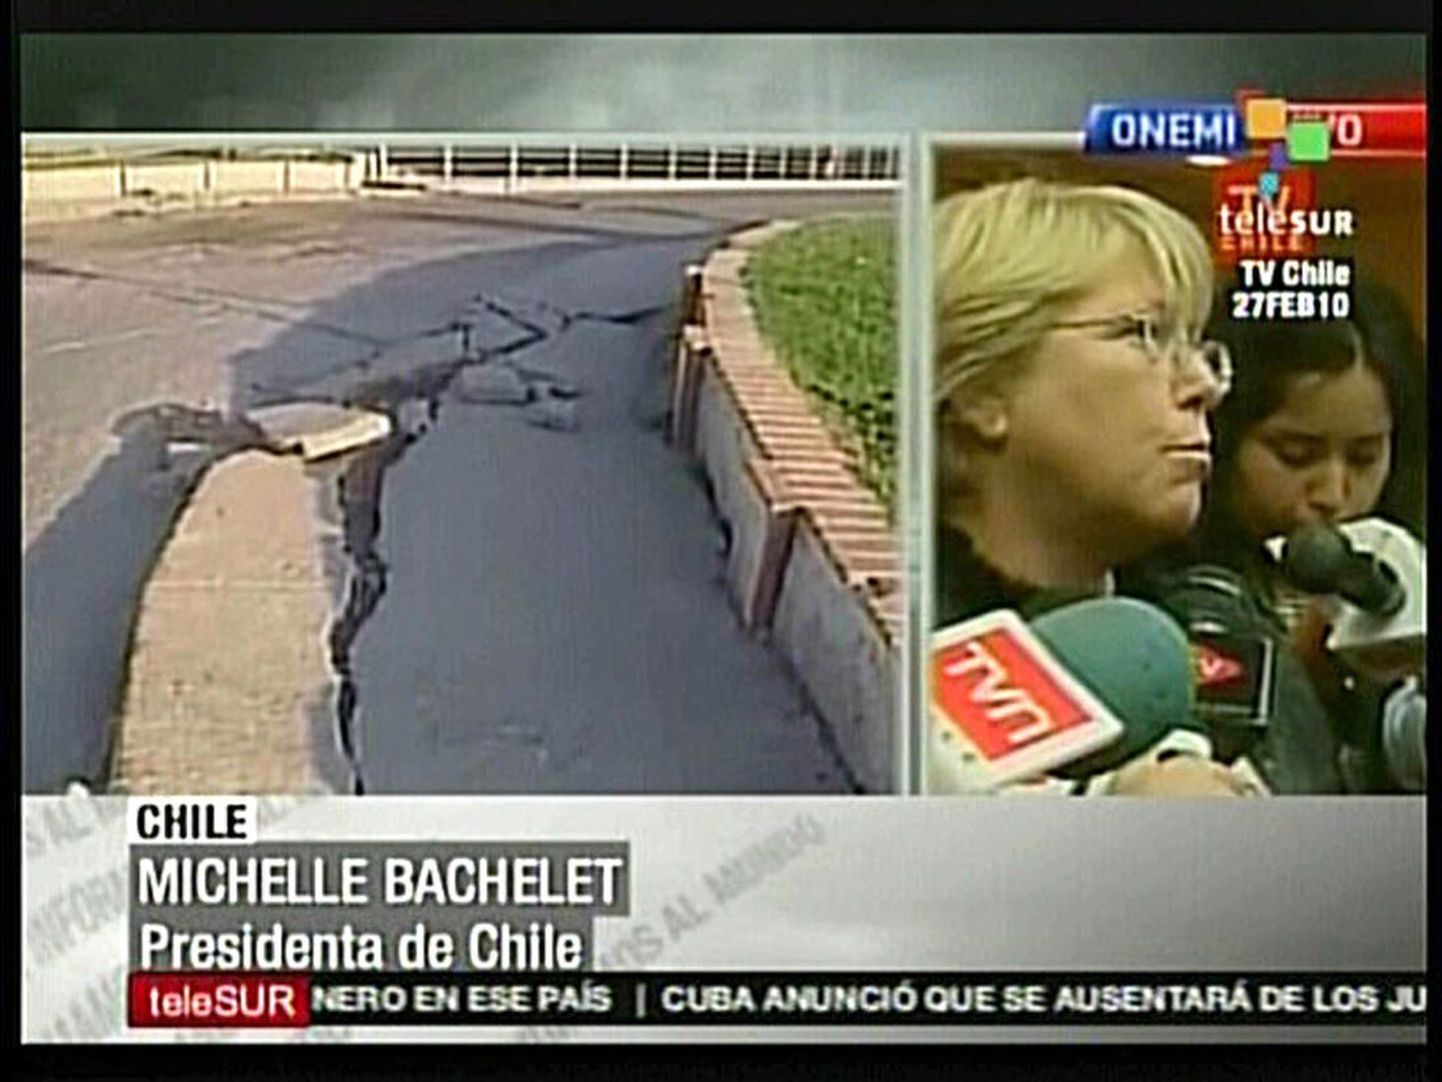 Telekanali Telesur edastatud pildi  paremal pool vastab ajakirjanike küsimustele Tšiili president Michelle Bachelet ja vasakul on näha purunenud tänavat.